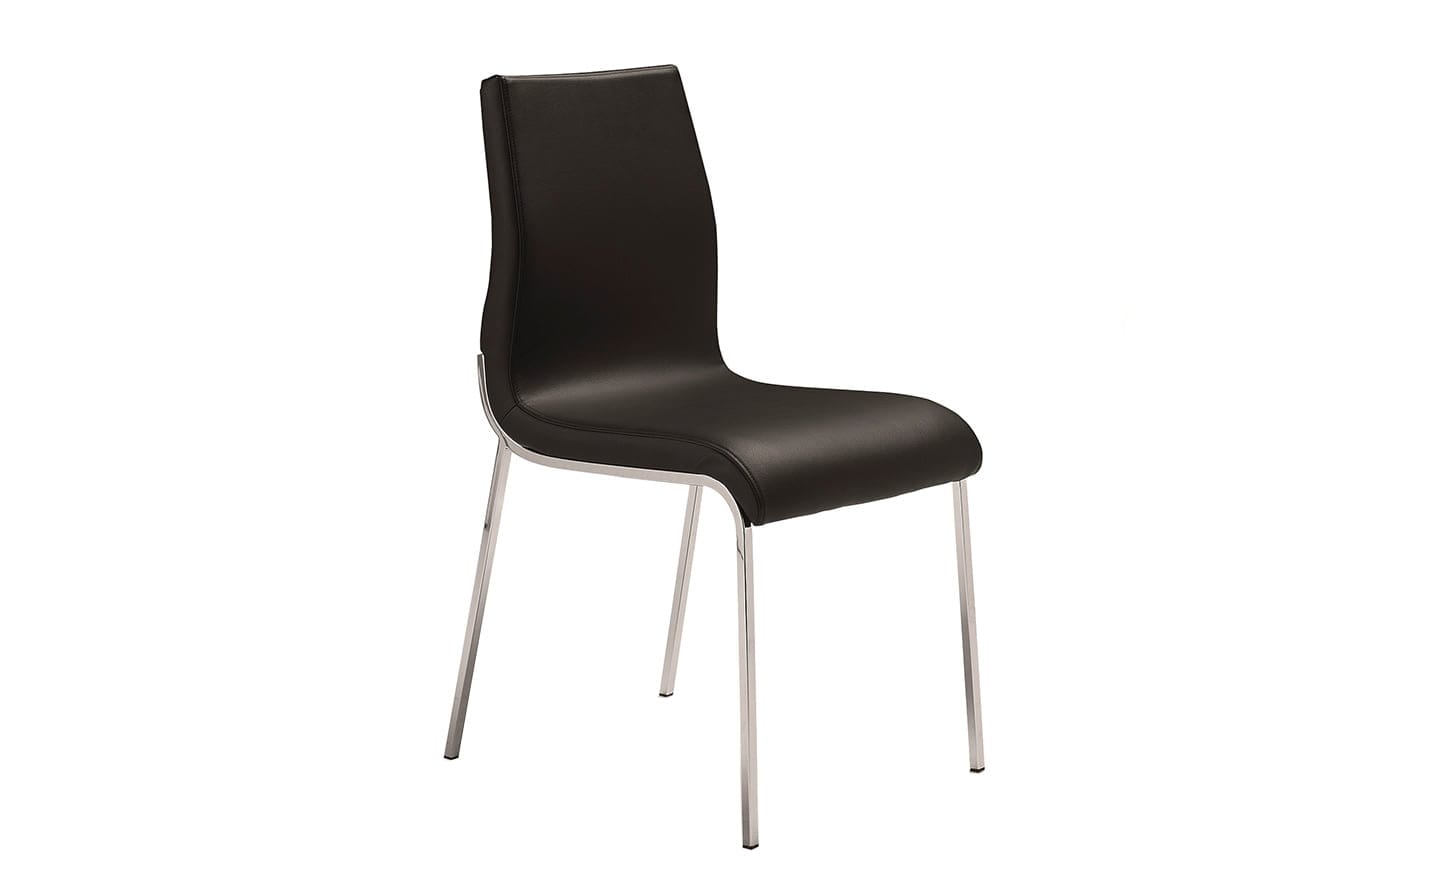 Cadeira Enjoy 4052, design moderno, estrutura em aço inoxidável, assento estofado | Moveistore